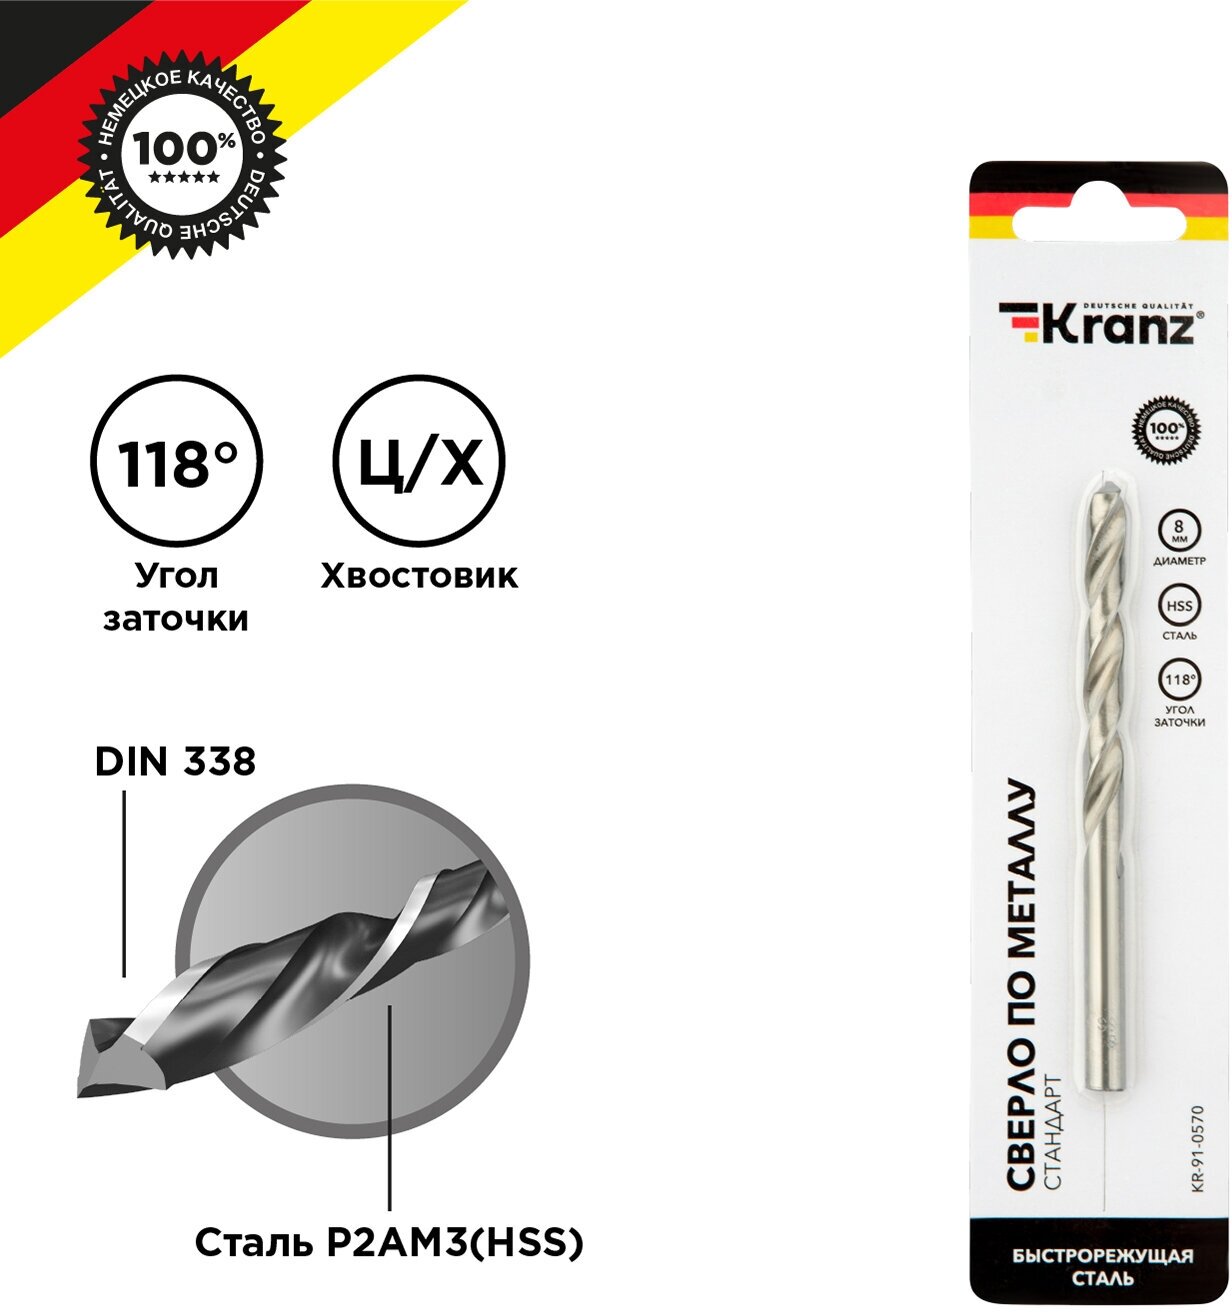 Сверло KRANZ по металлу 8,0 мм повышенной прочности с углом заточки 118 градусов HSS, 1 шт. в упаковке, DIN 338